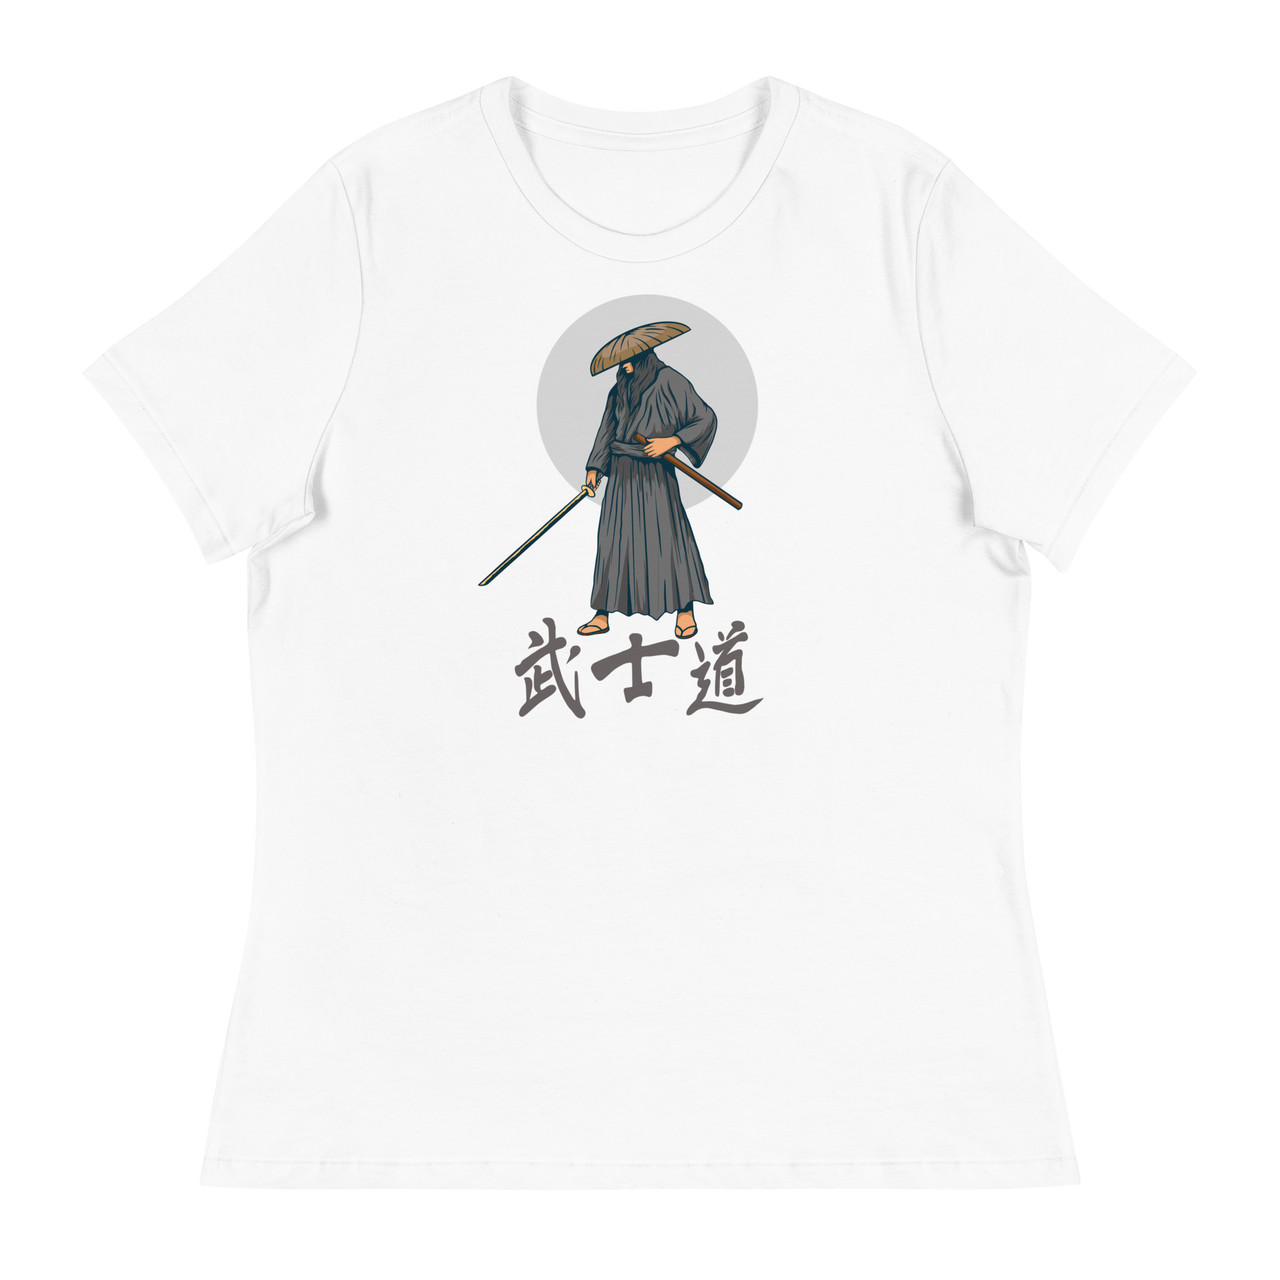 Samurai 9 Women's Relaxed T-Shirt - Bella + Canvas 6400 